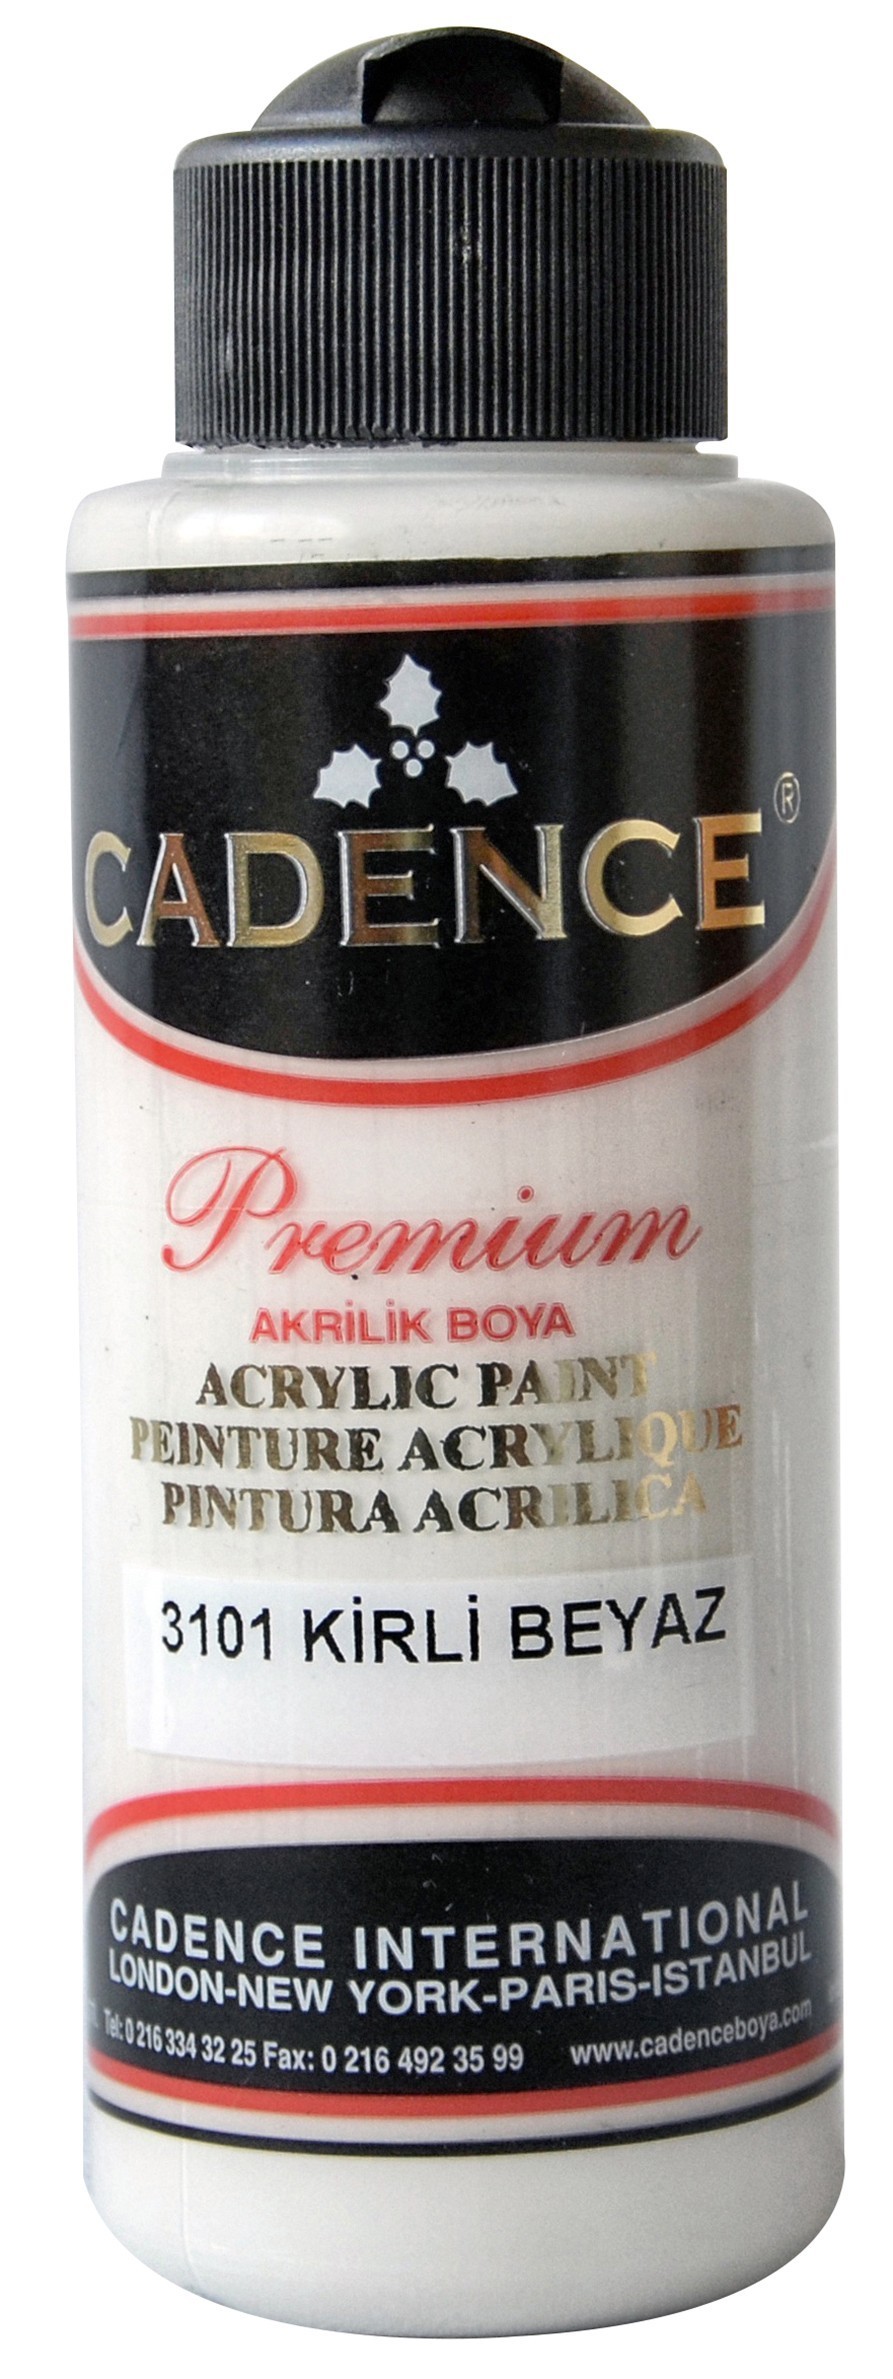 Cadence Akrilik Boya 120ML(cc) 3101 Kirli Beyaz fiyatları